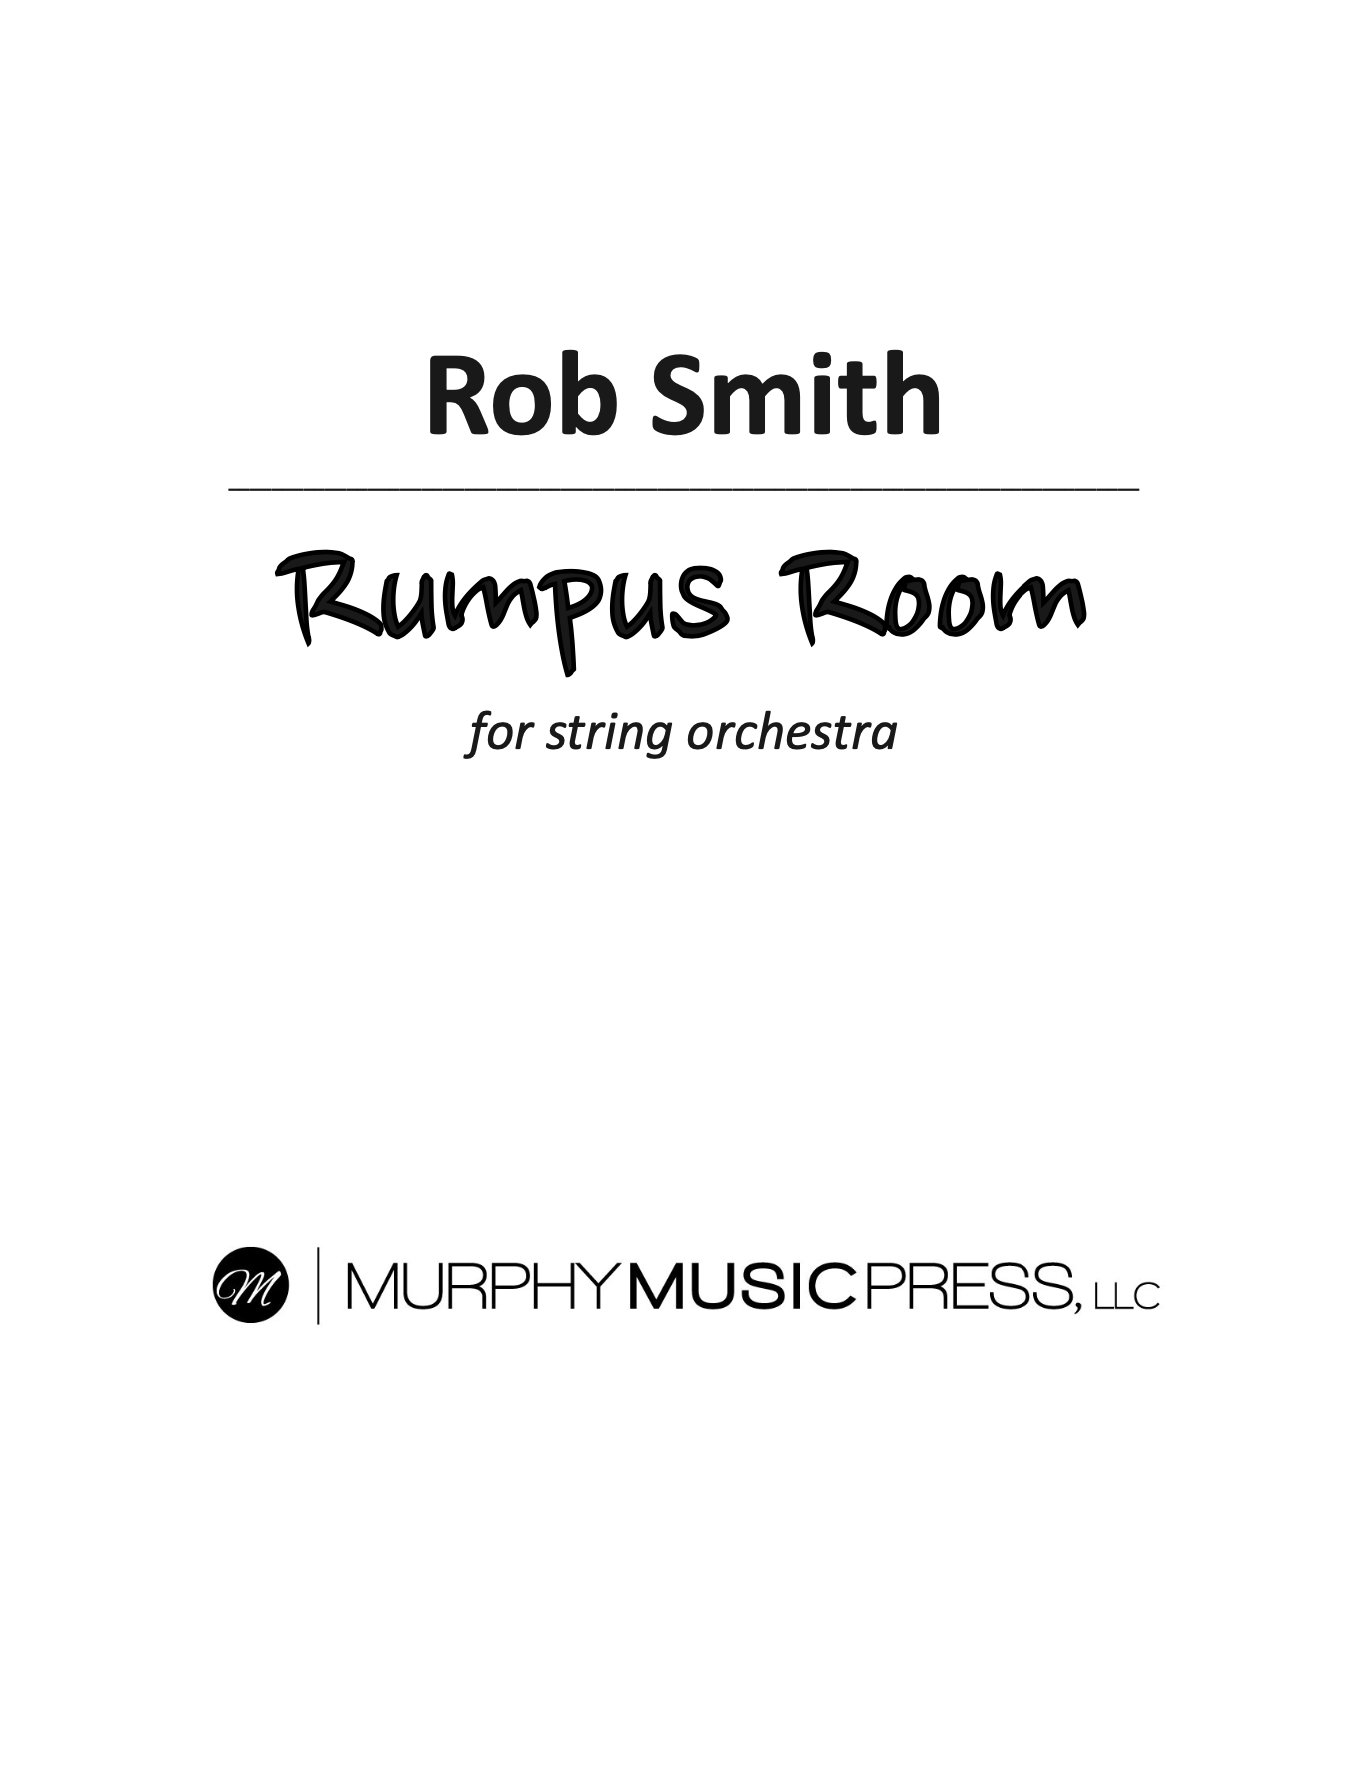 Rumpus Room by Rob Smith